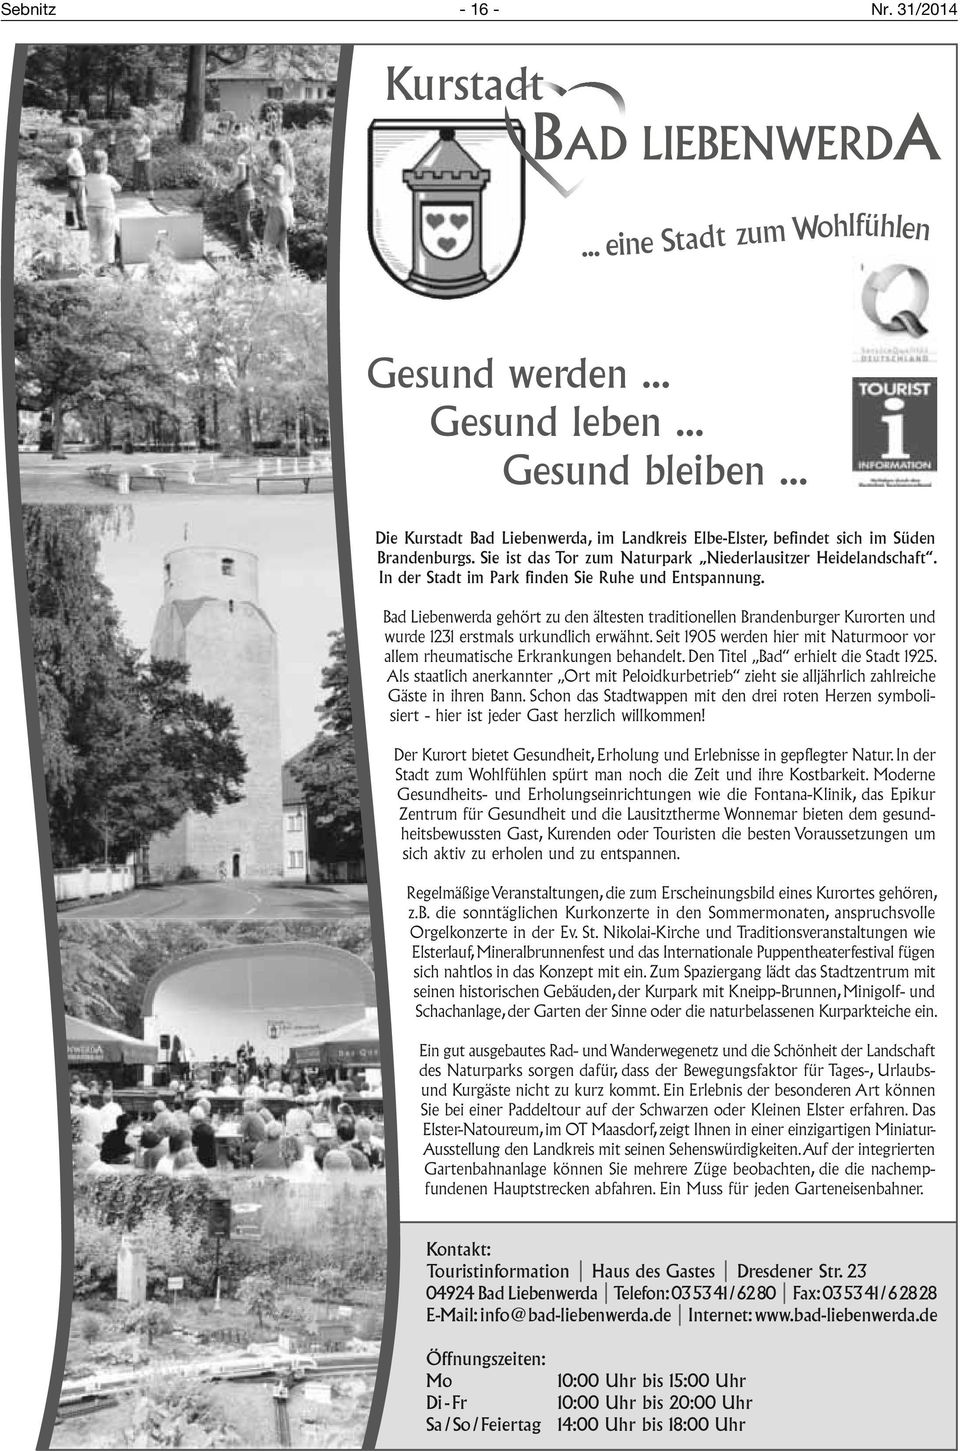 In der Stadt im Park finden Sie Ruhe und Entspannung. Bad Liebenwerda gehört zu den ältesten traditionellen Brandenburger Kurorten und wurde 1231 erstmals urkundlich erwähnt.